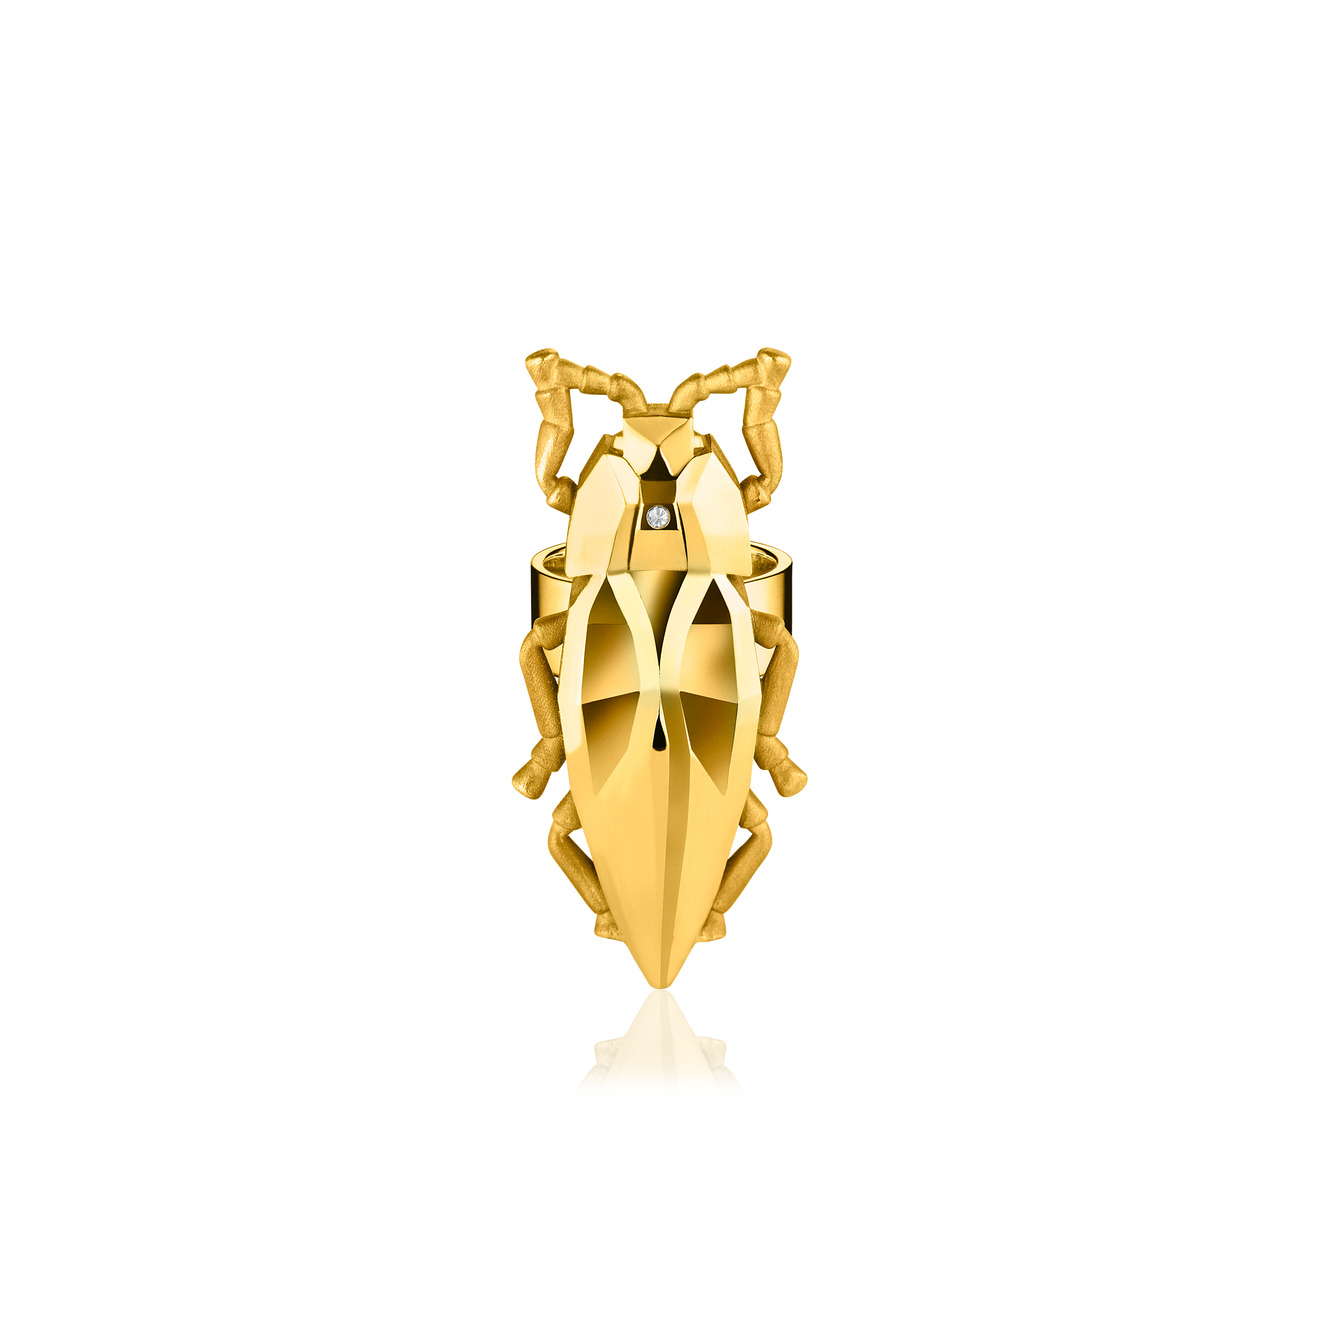 Vertigo Jewellery Lab Позолоченное кольцо СLEOPTR из серебра с бриллиантом vertigo jewellery lab фаланговое кольцо из серебра essentials покрытое розовым золотом